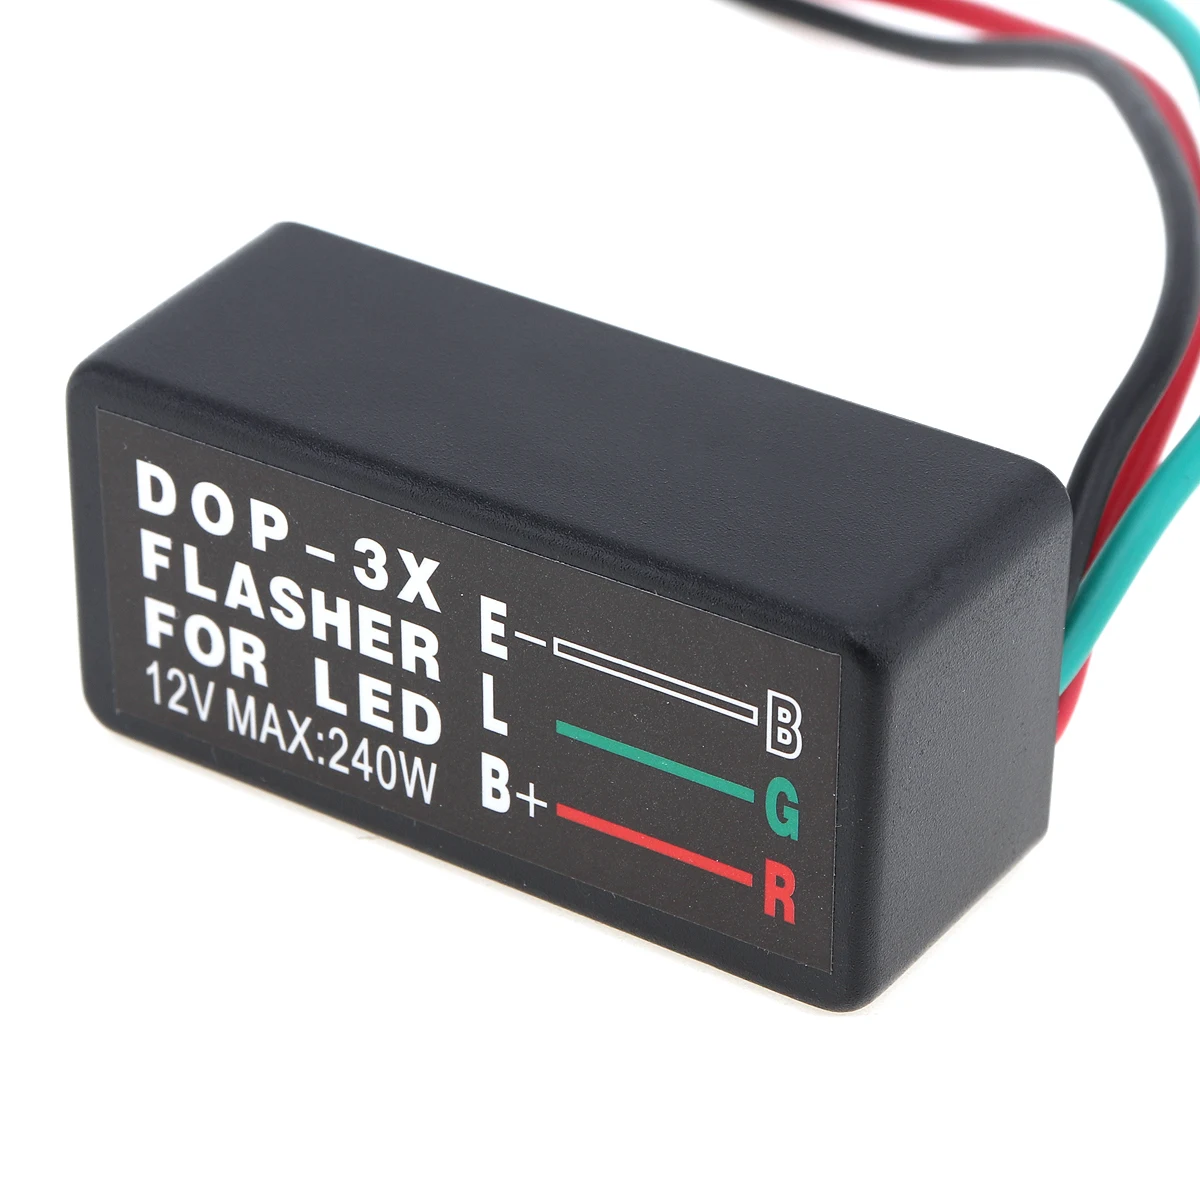 DOP-3X Водонепроницаемый светодиодный светильник сигнала поворота мигалка Реле Контроллер вспышки мигалка модуль для автомобиля/мотоцикла/ATV